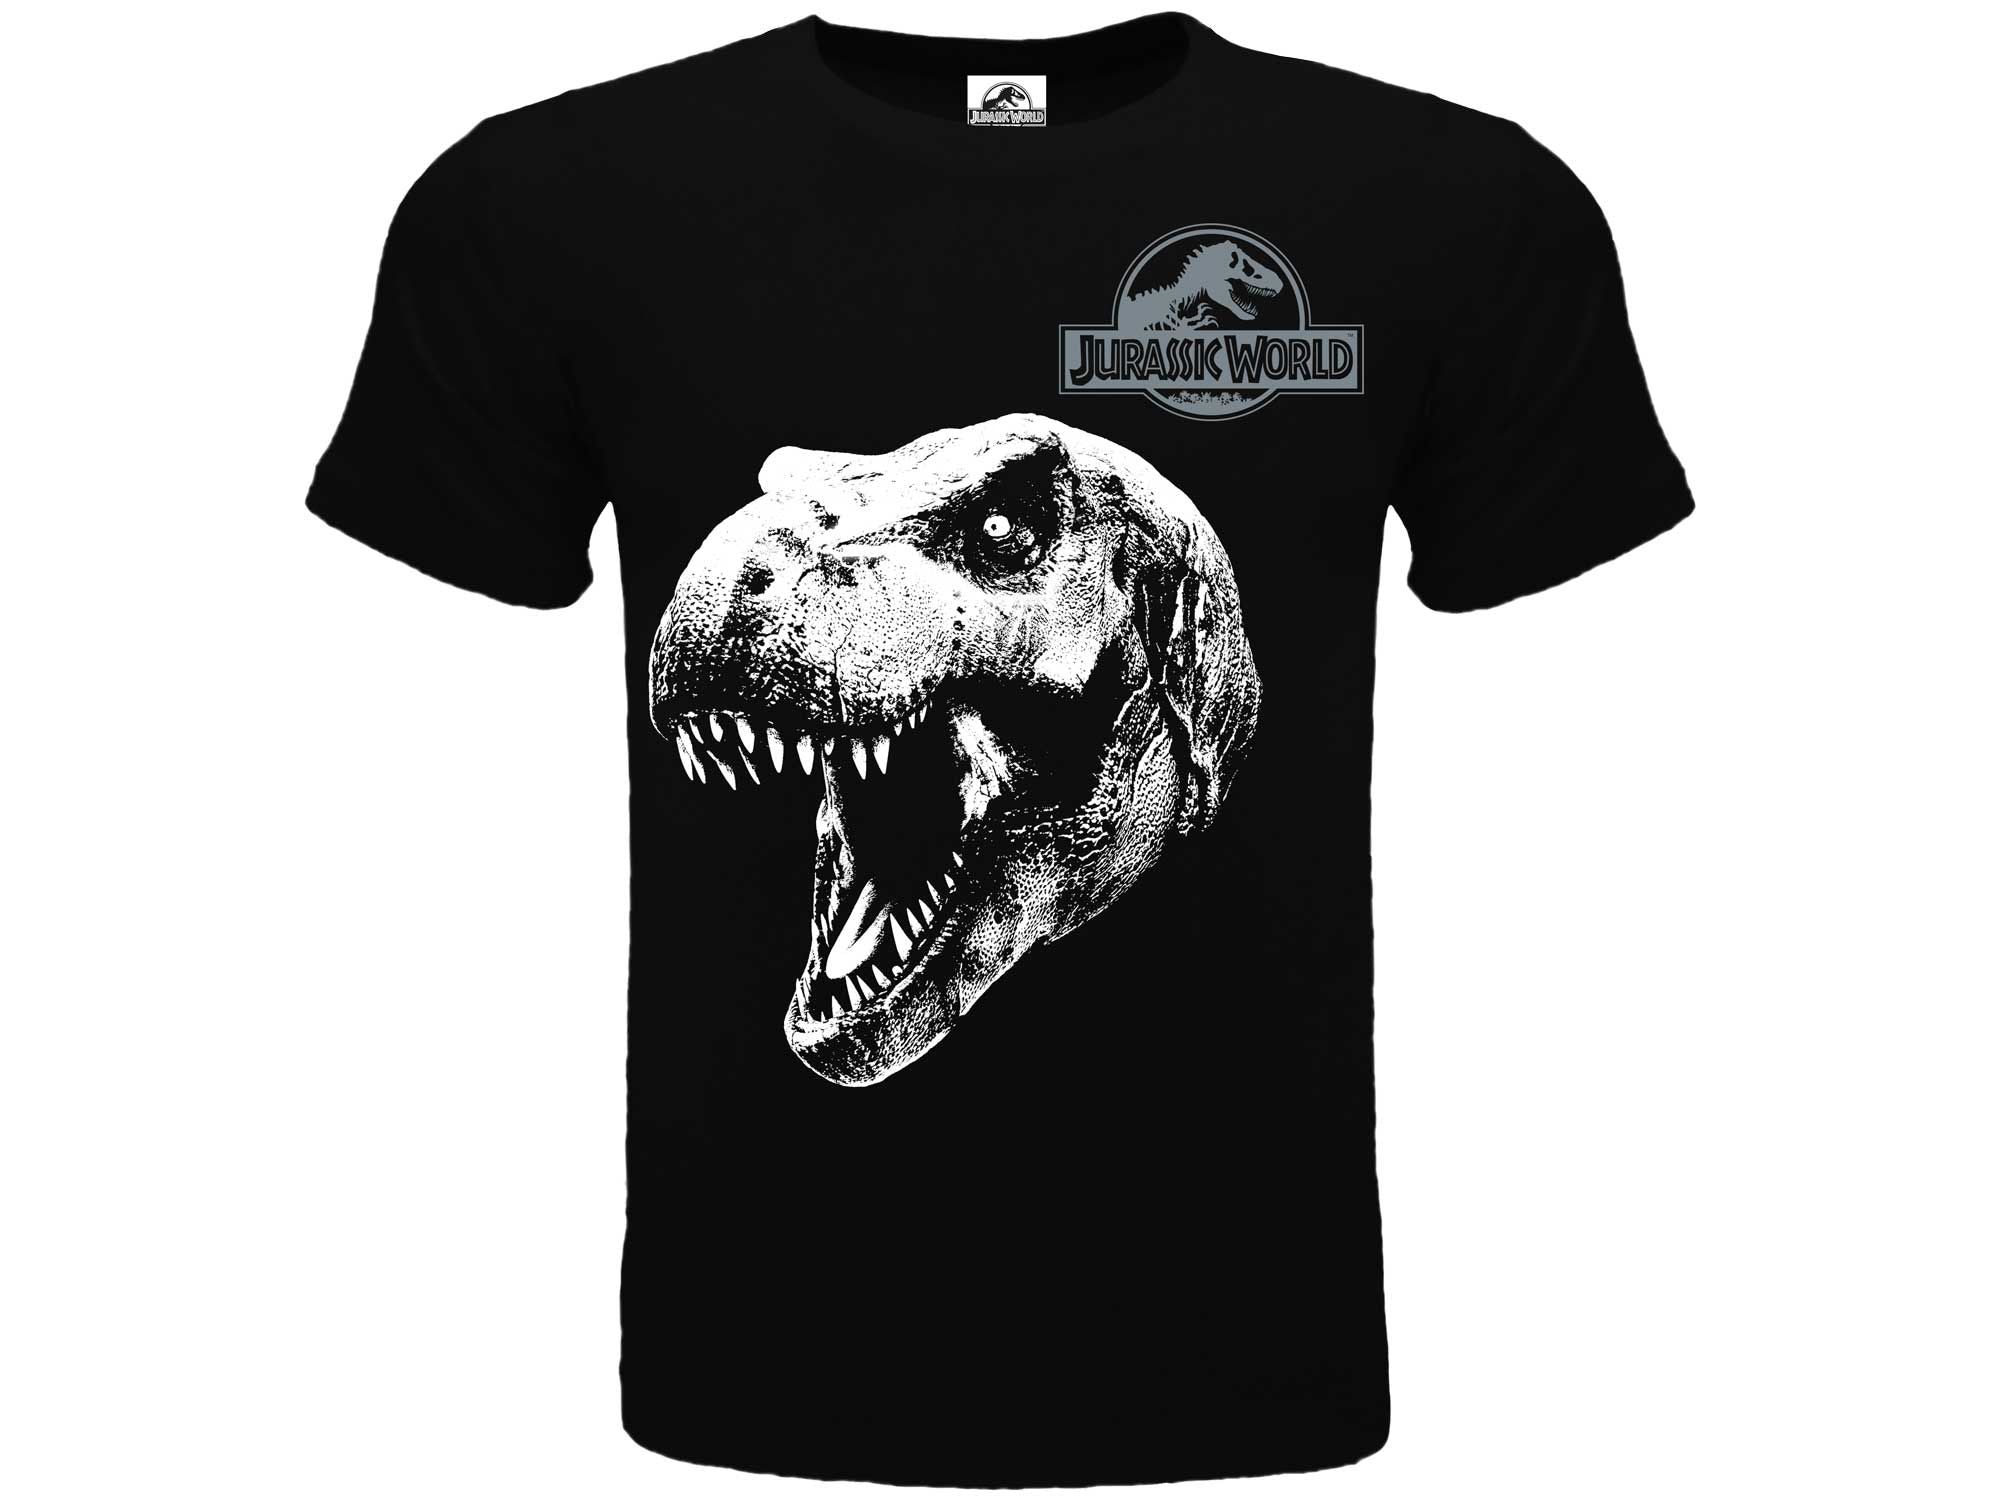 JURASSIC WORLD : T-REX T-shirt 9/11 anni nera - Disponibile in 2/3 giorni lavorativi GED